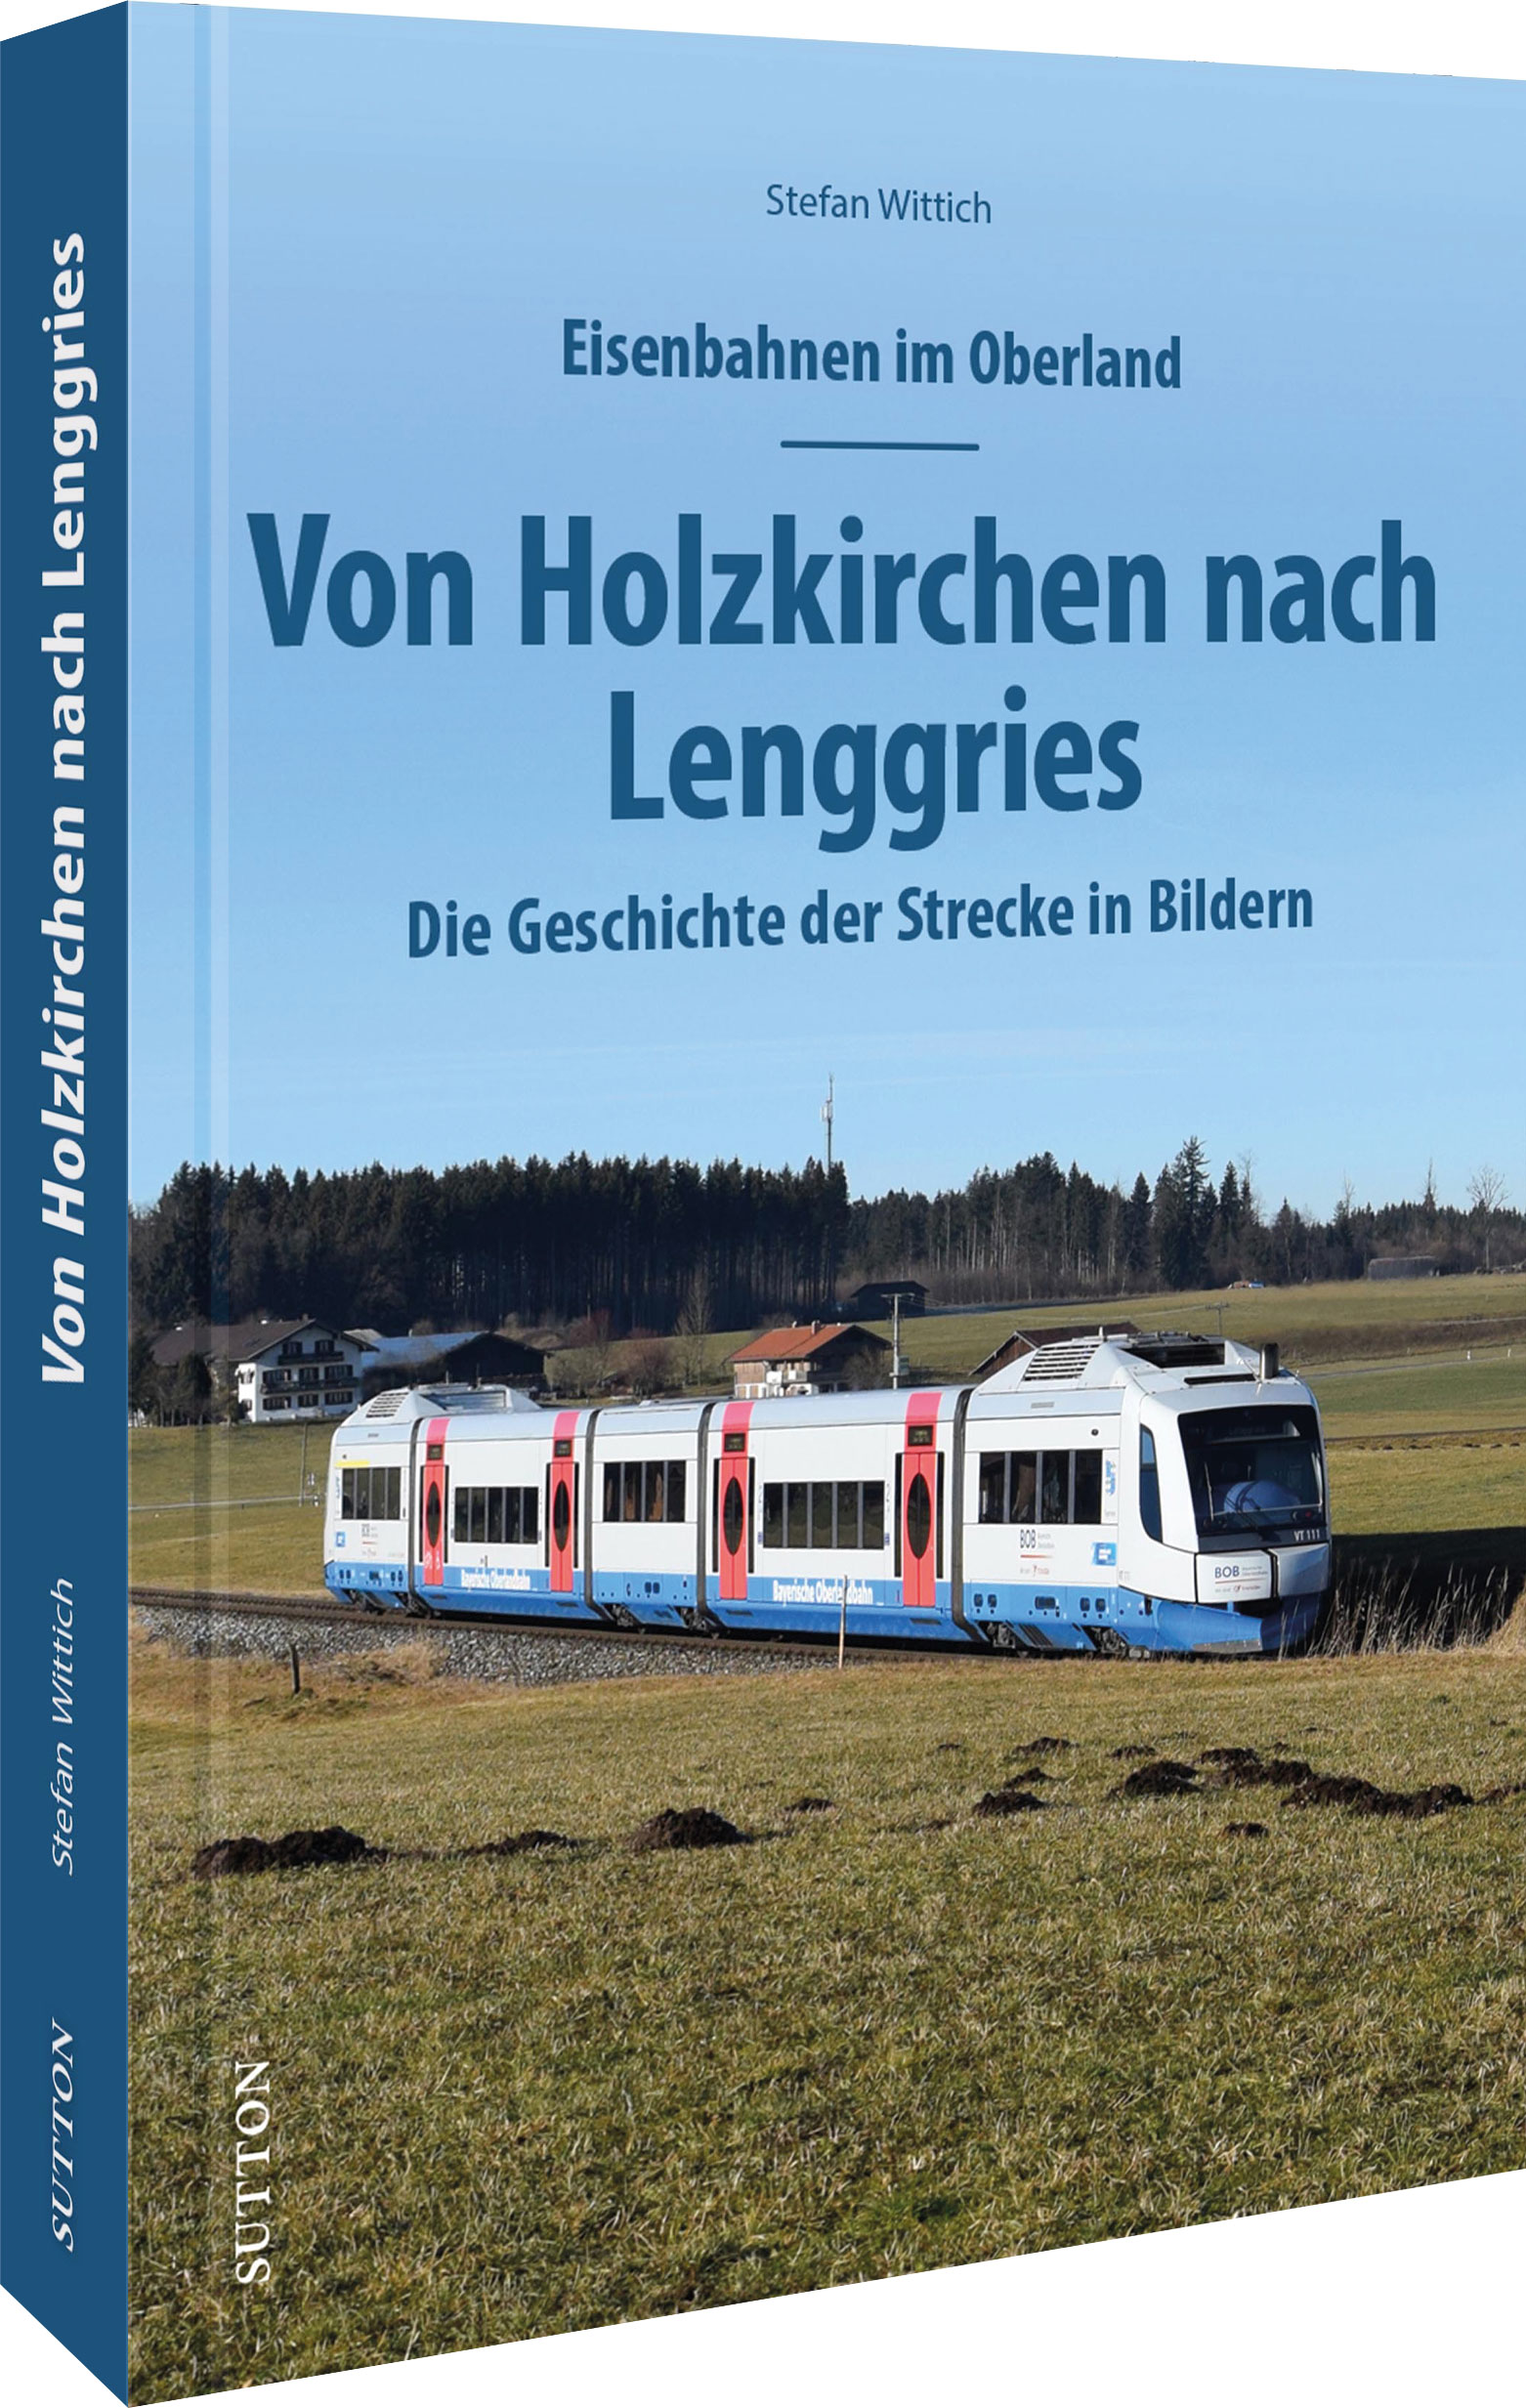 Eisenbahnen im Oberland: Von Holzkirchen nach Lenggries